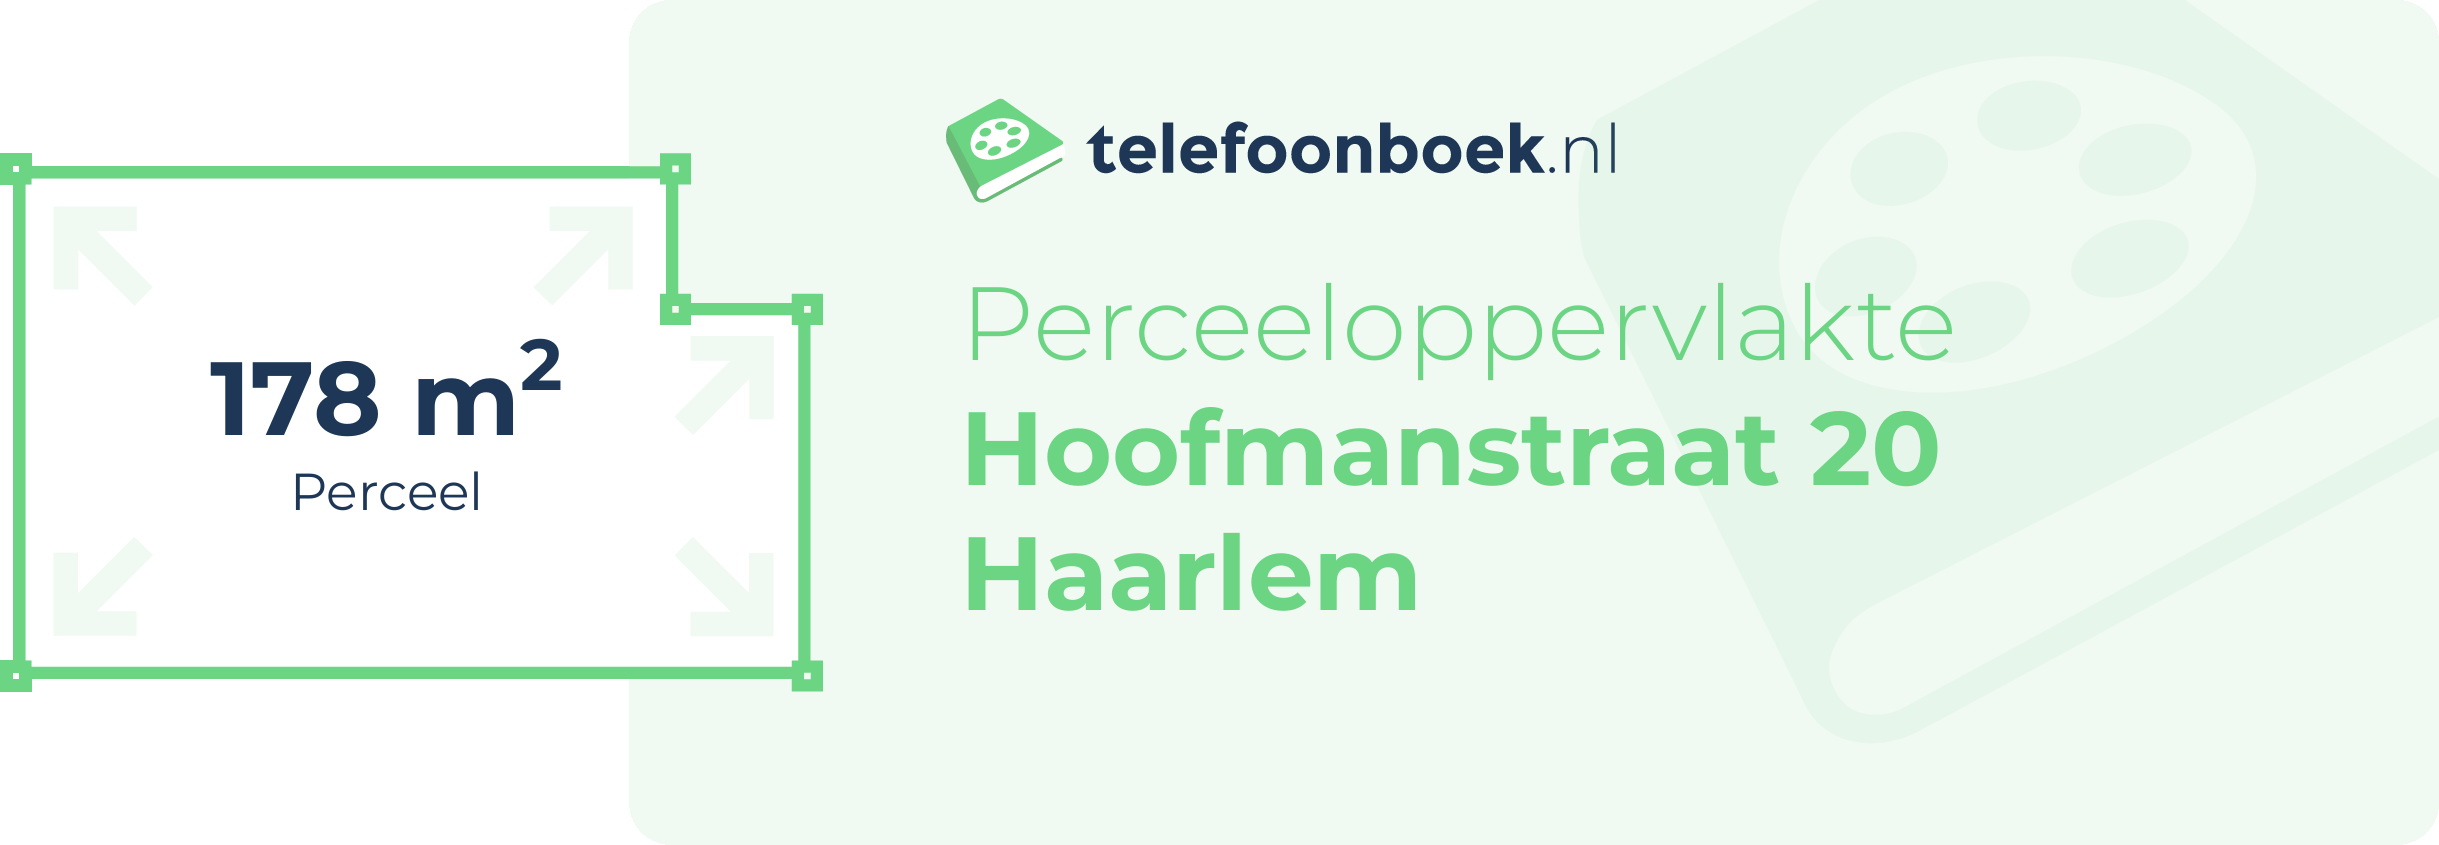 Perceeloppervlakte Hoofmanstraat 20 Haarlem